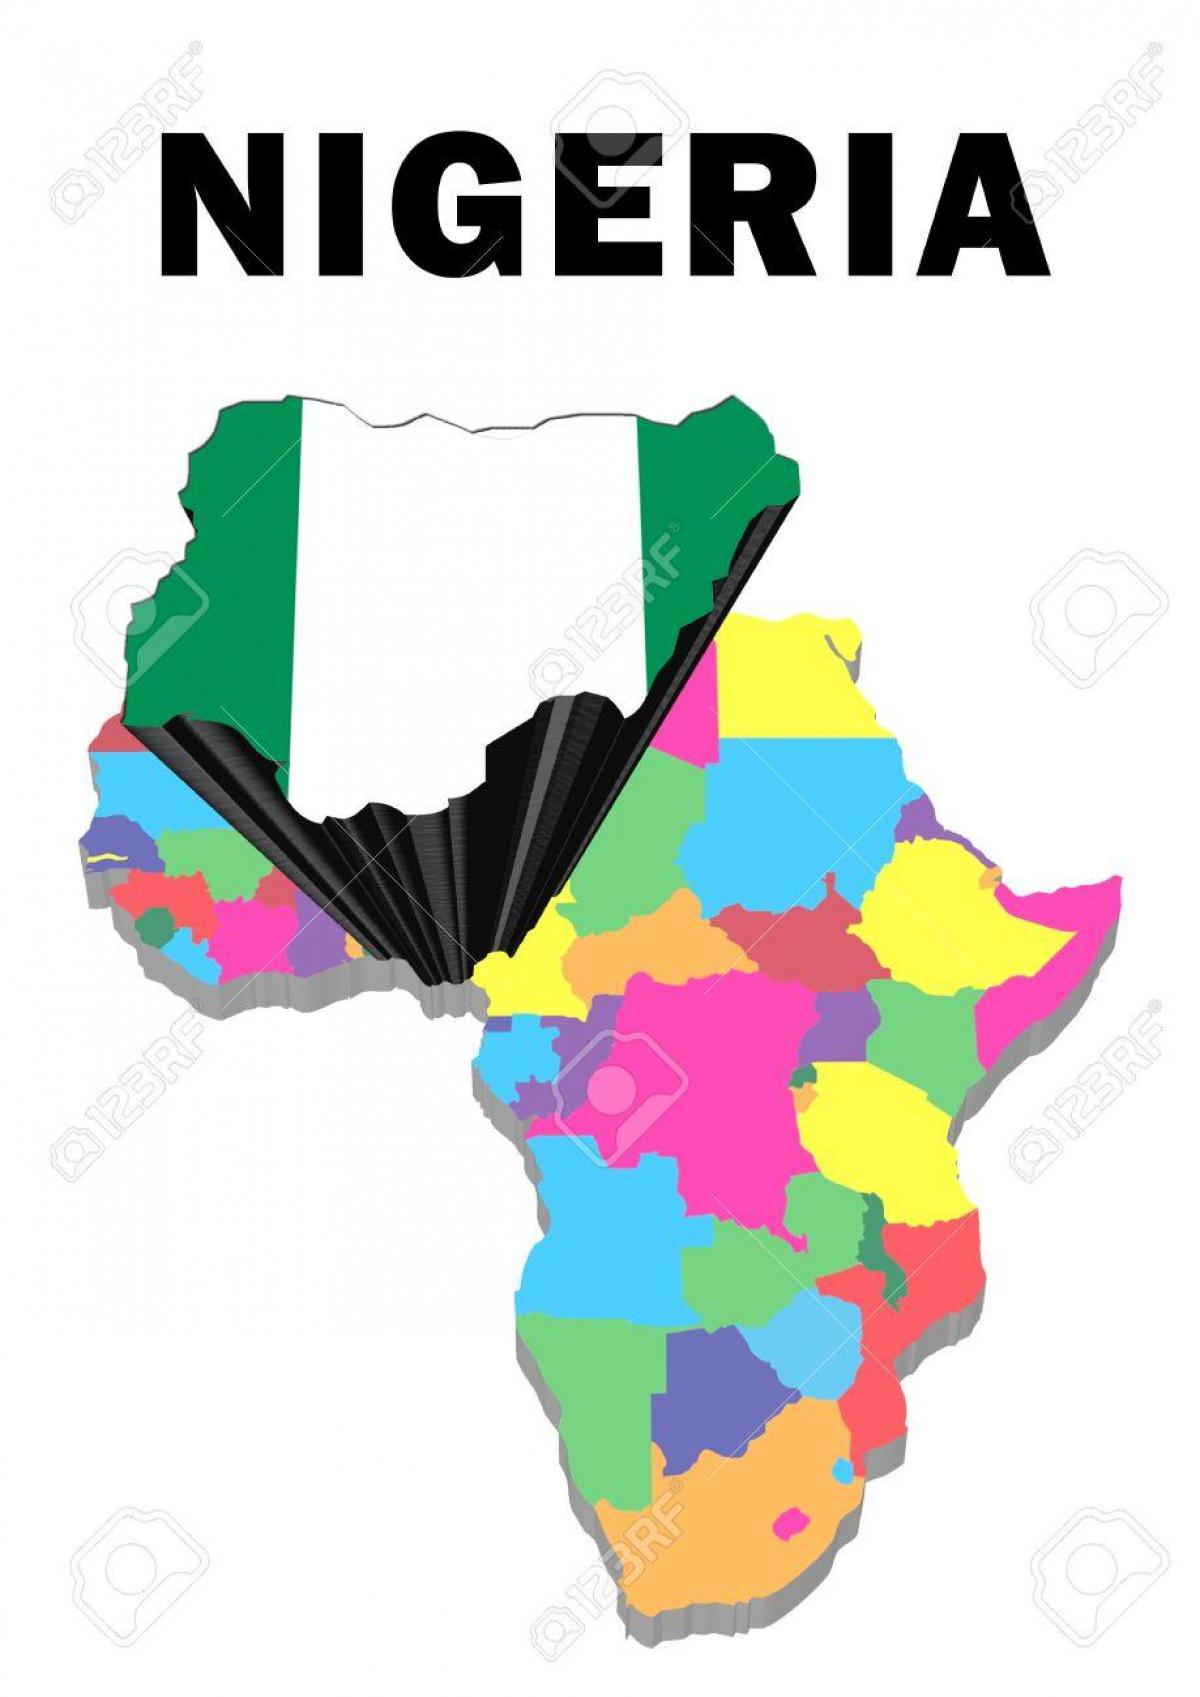 非洲的地图与尼日利亚强调了